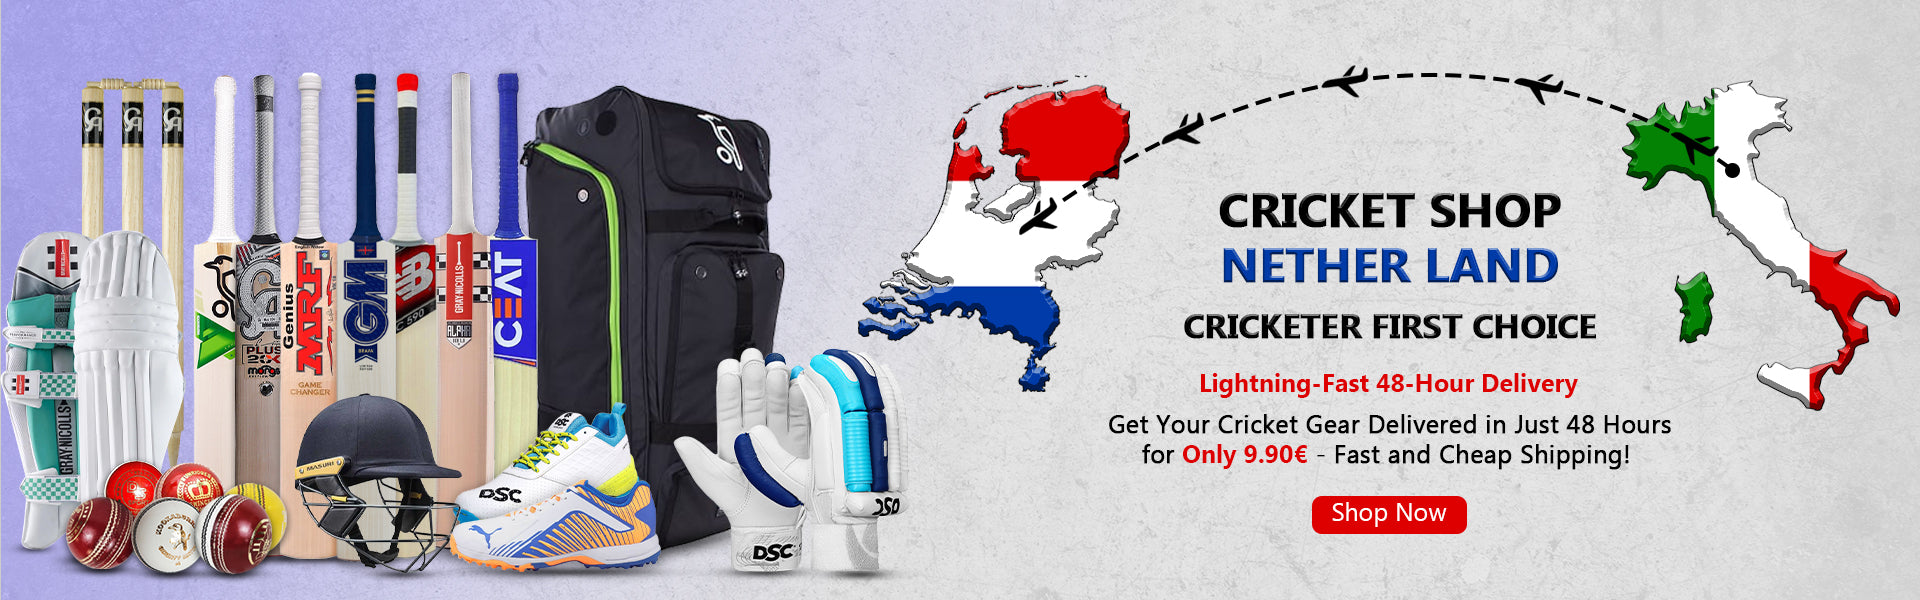 Cricket Shop Netherlands | Cricketer first Choice